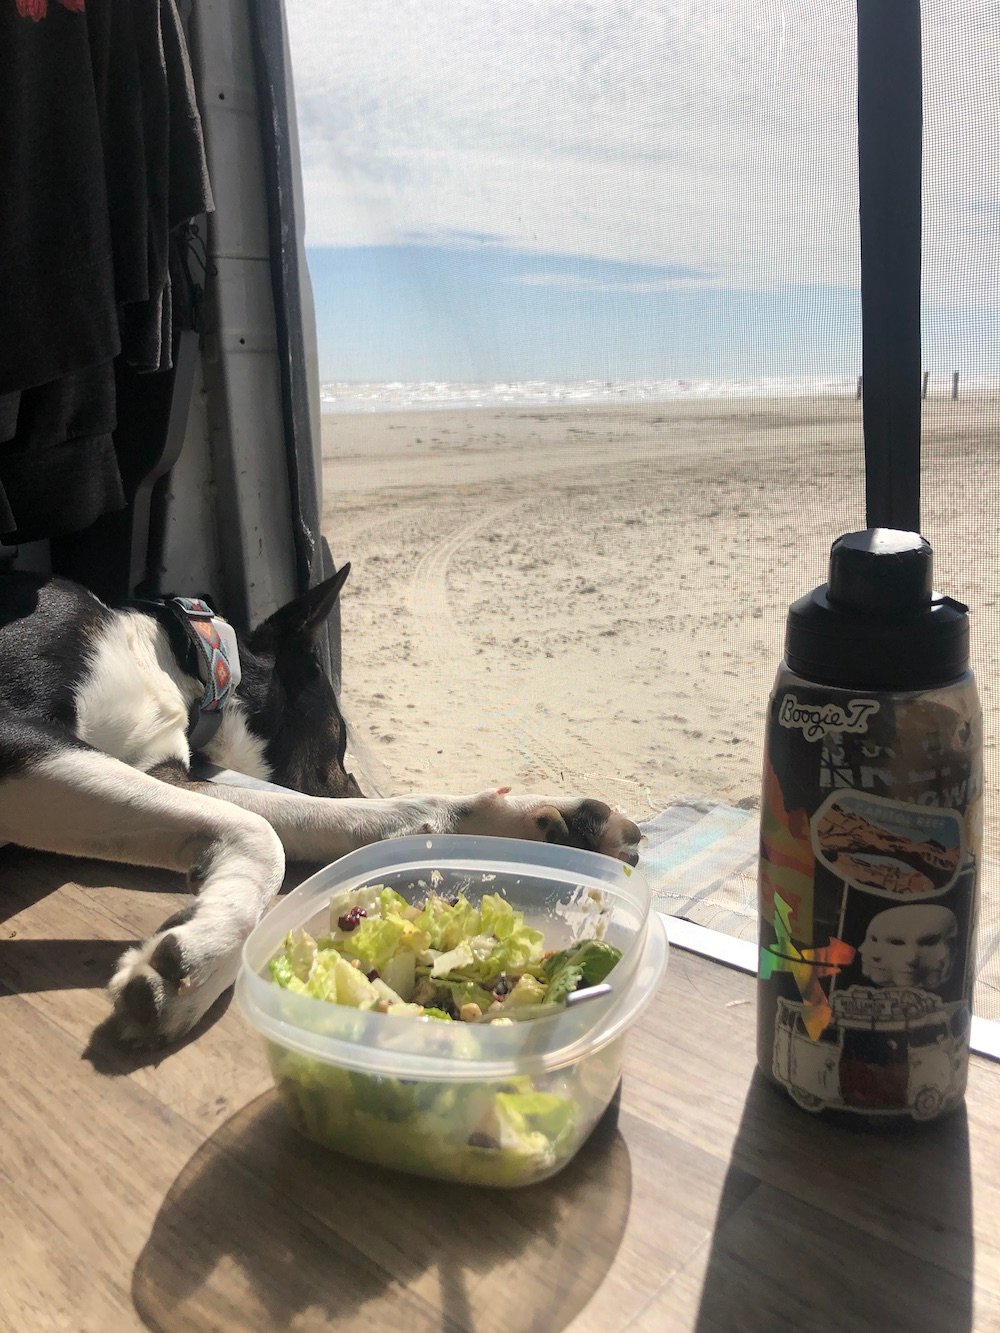 Zorro van life dog at beach